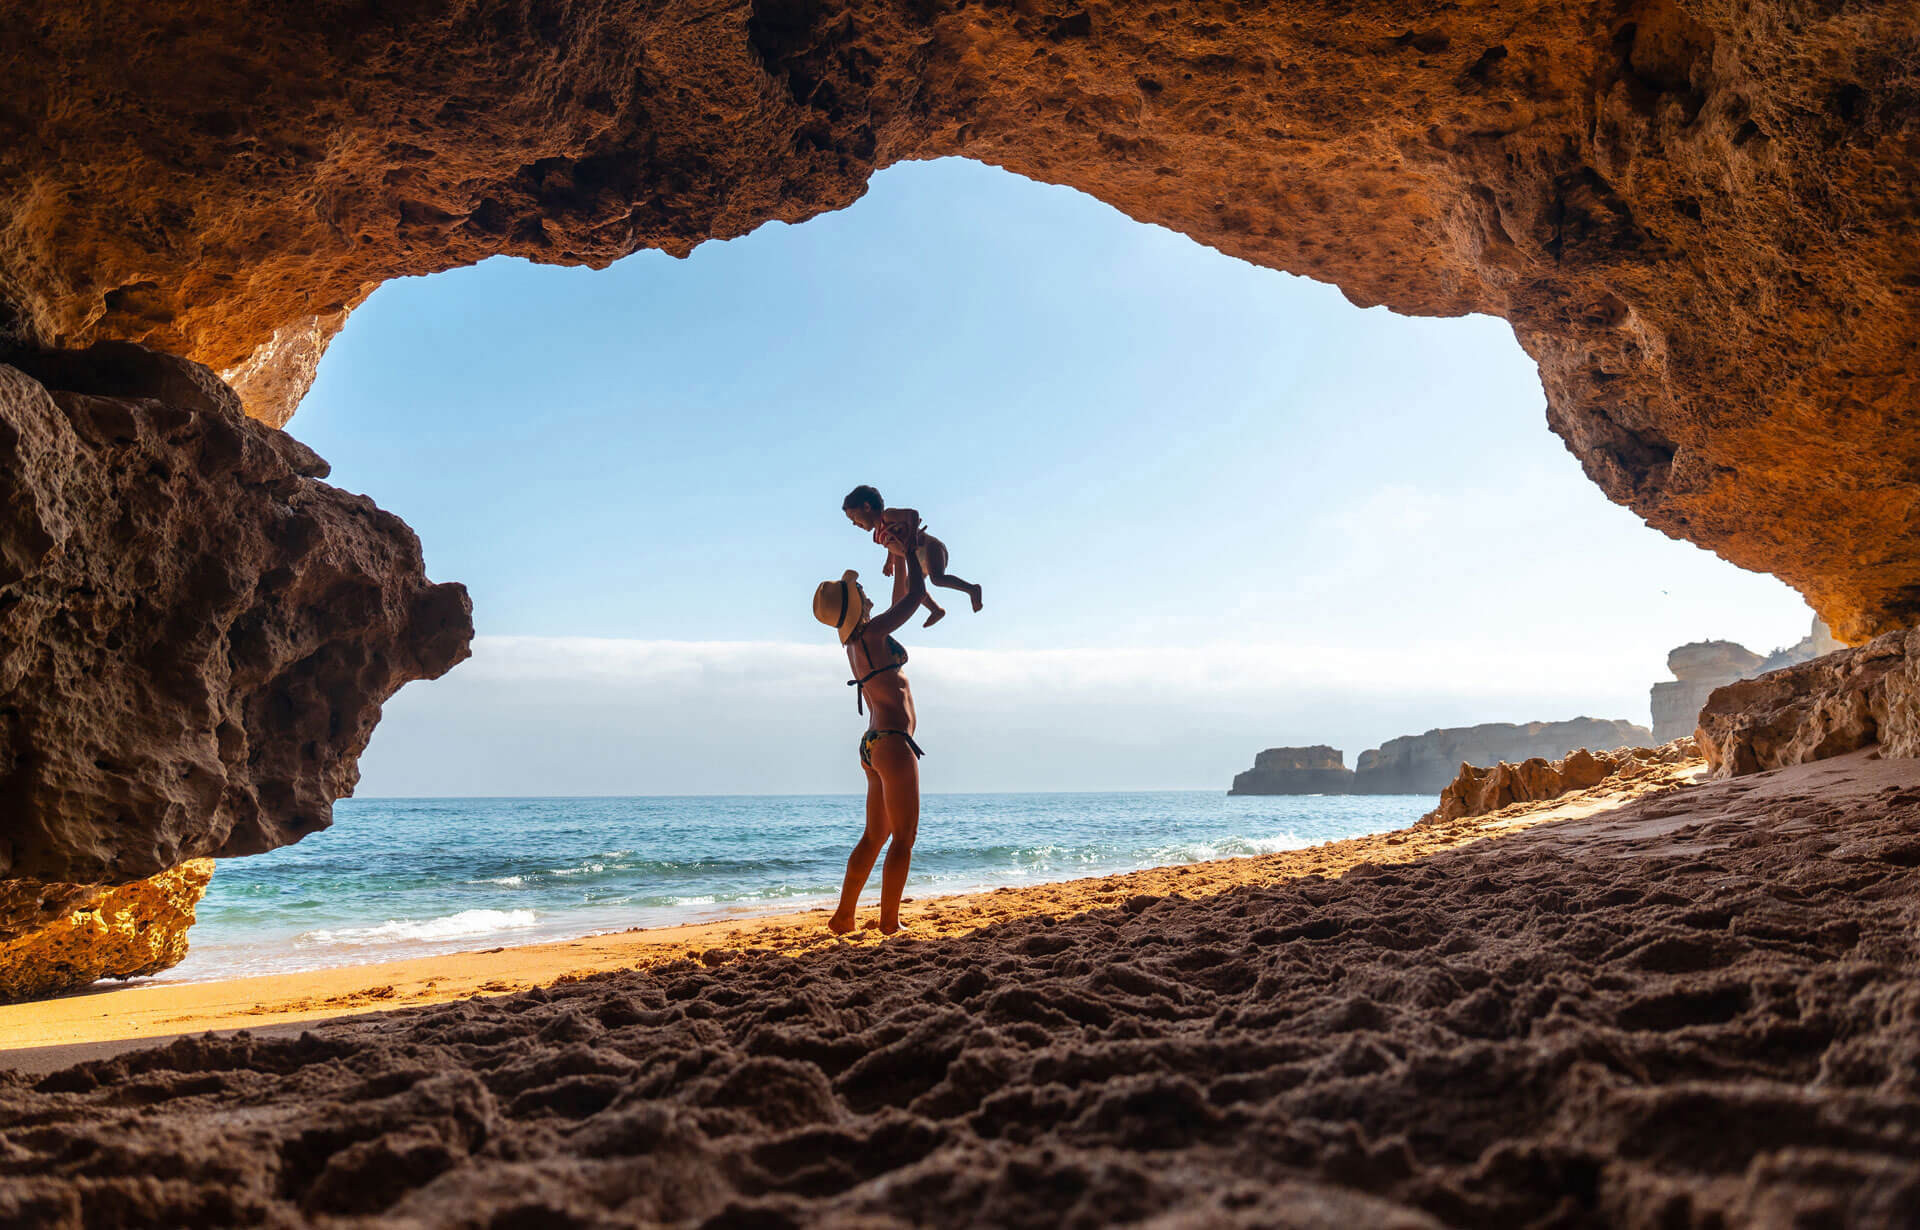 Blickwinkel vom Land durch eine Grotte Richtung Meer. Eine junge Frau hält ihr kleines Kind hoch.